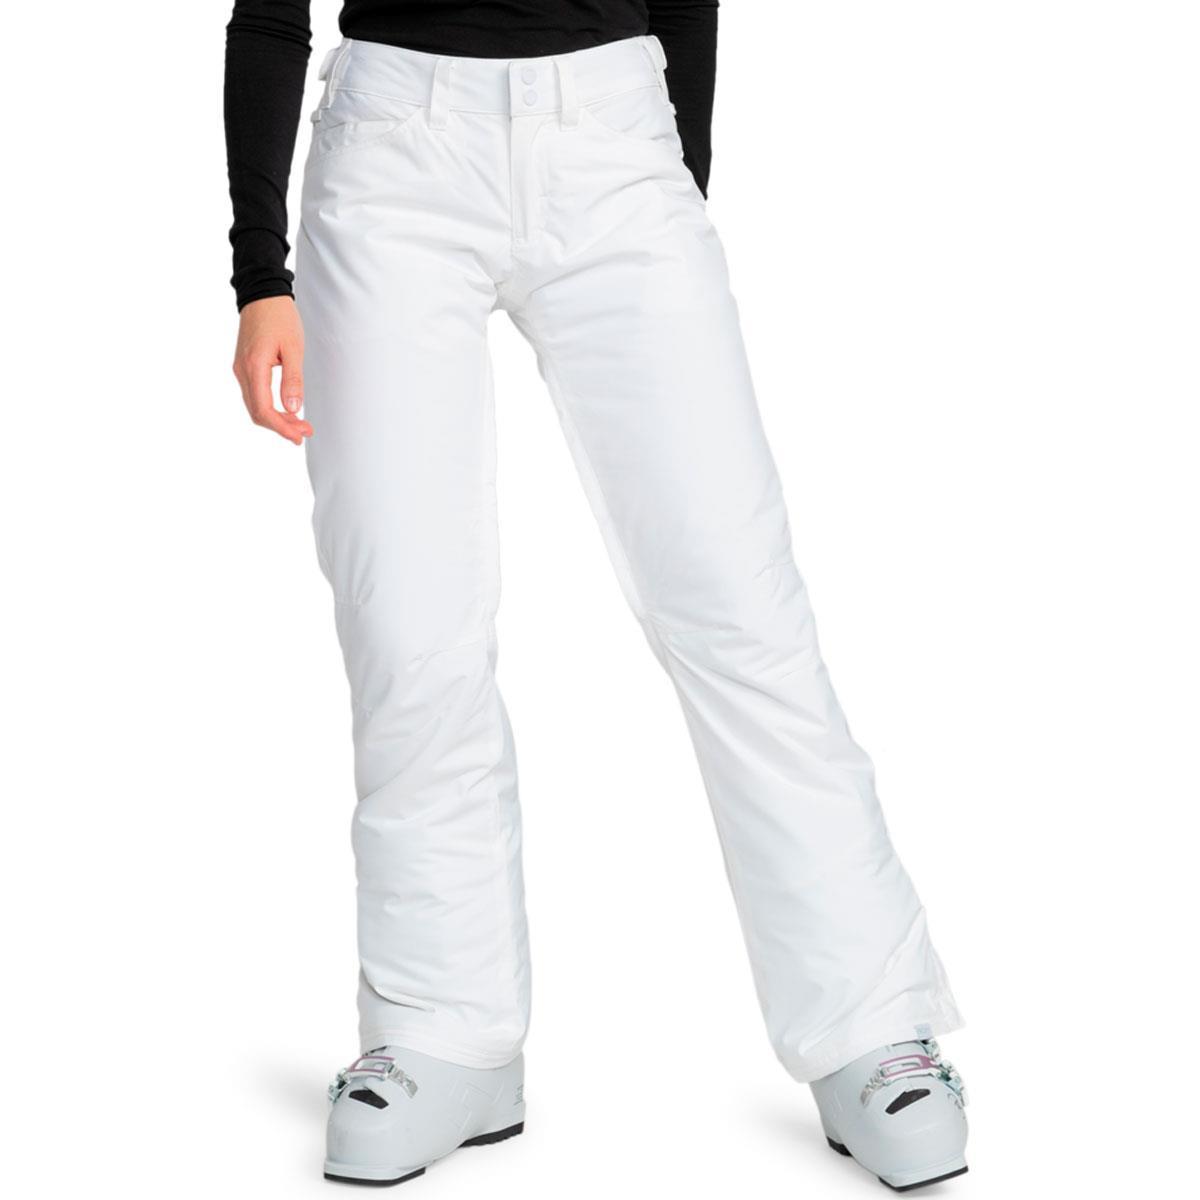 pants Roxy Creek - WBB0/Bright White - women´s 